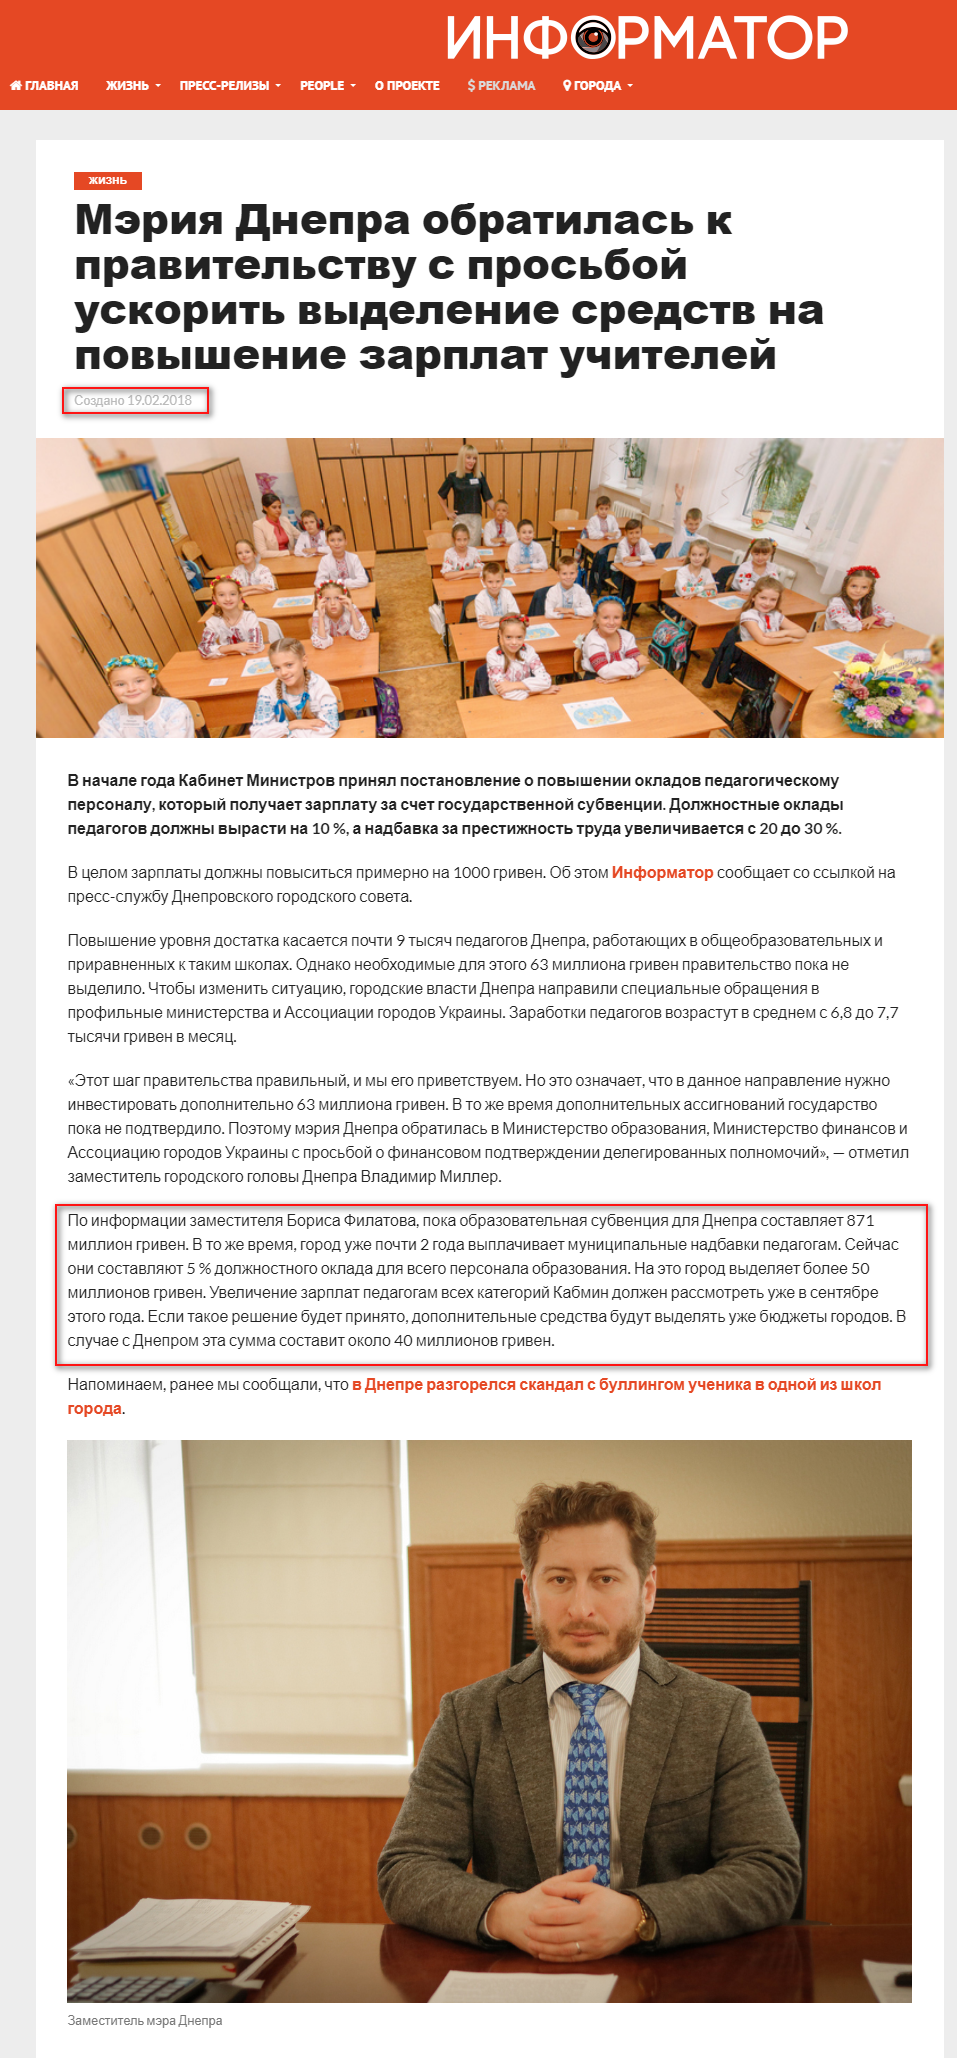 https://dp.informator.ua/2018/02/19/meriya-dnepra-obratilas-k-pravitelstvu-s-prosboj-uskorit-vydelenie-sredstv-na-povyshenie-zarplat-uchitelej/